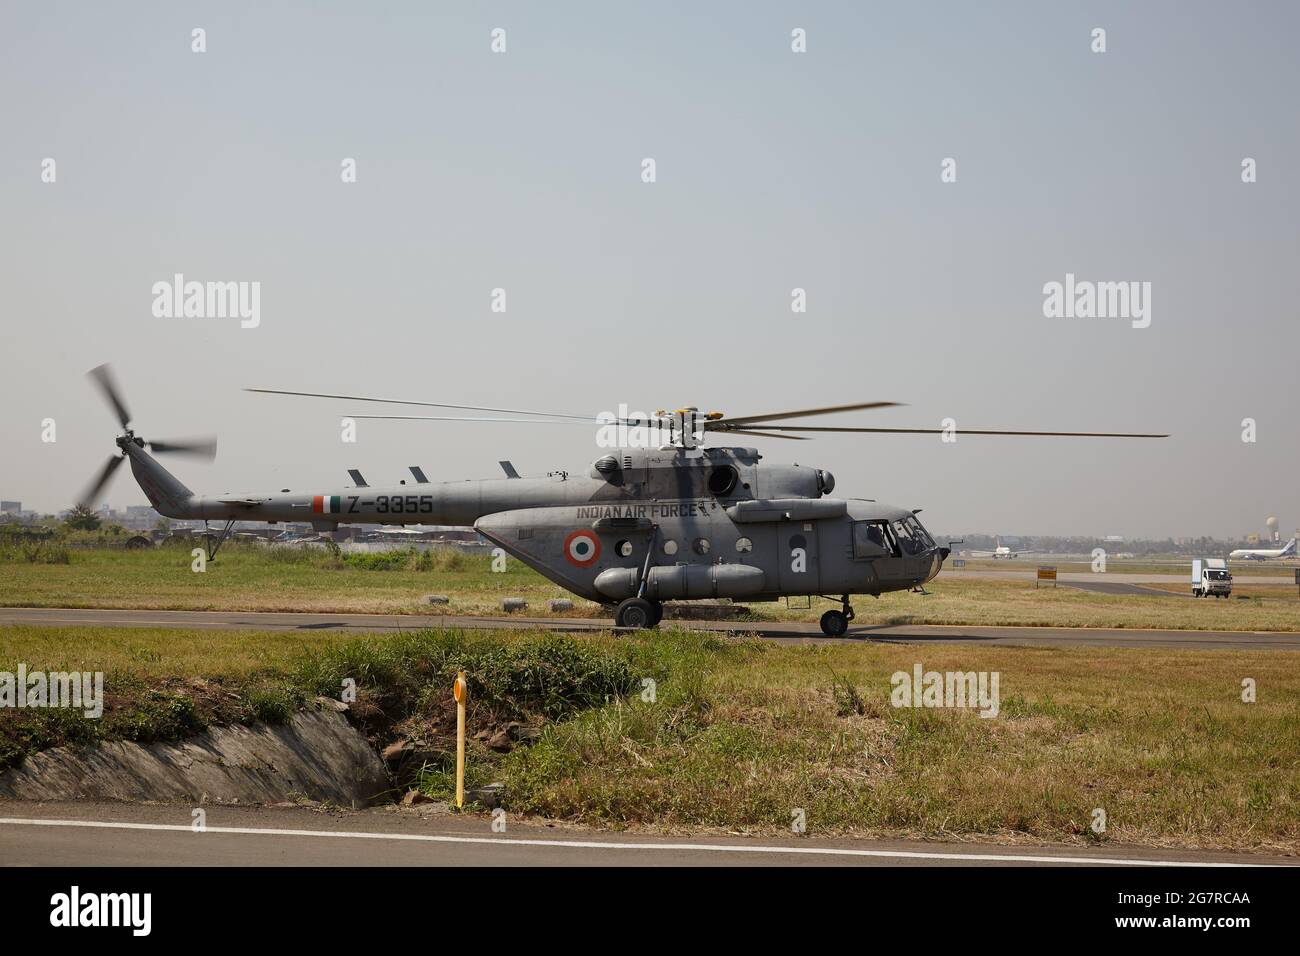 Hélicoptère MIL mi-8, Union soviétique, Russie, Station aérienne de Yelahanka, aérodrome de l'Armée de l'Air indienne, Yelahanka, Bengaluru, Bangalore, Karnataka, Inde, Asie, Inde, Asie Banque D'Images